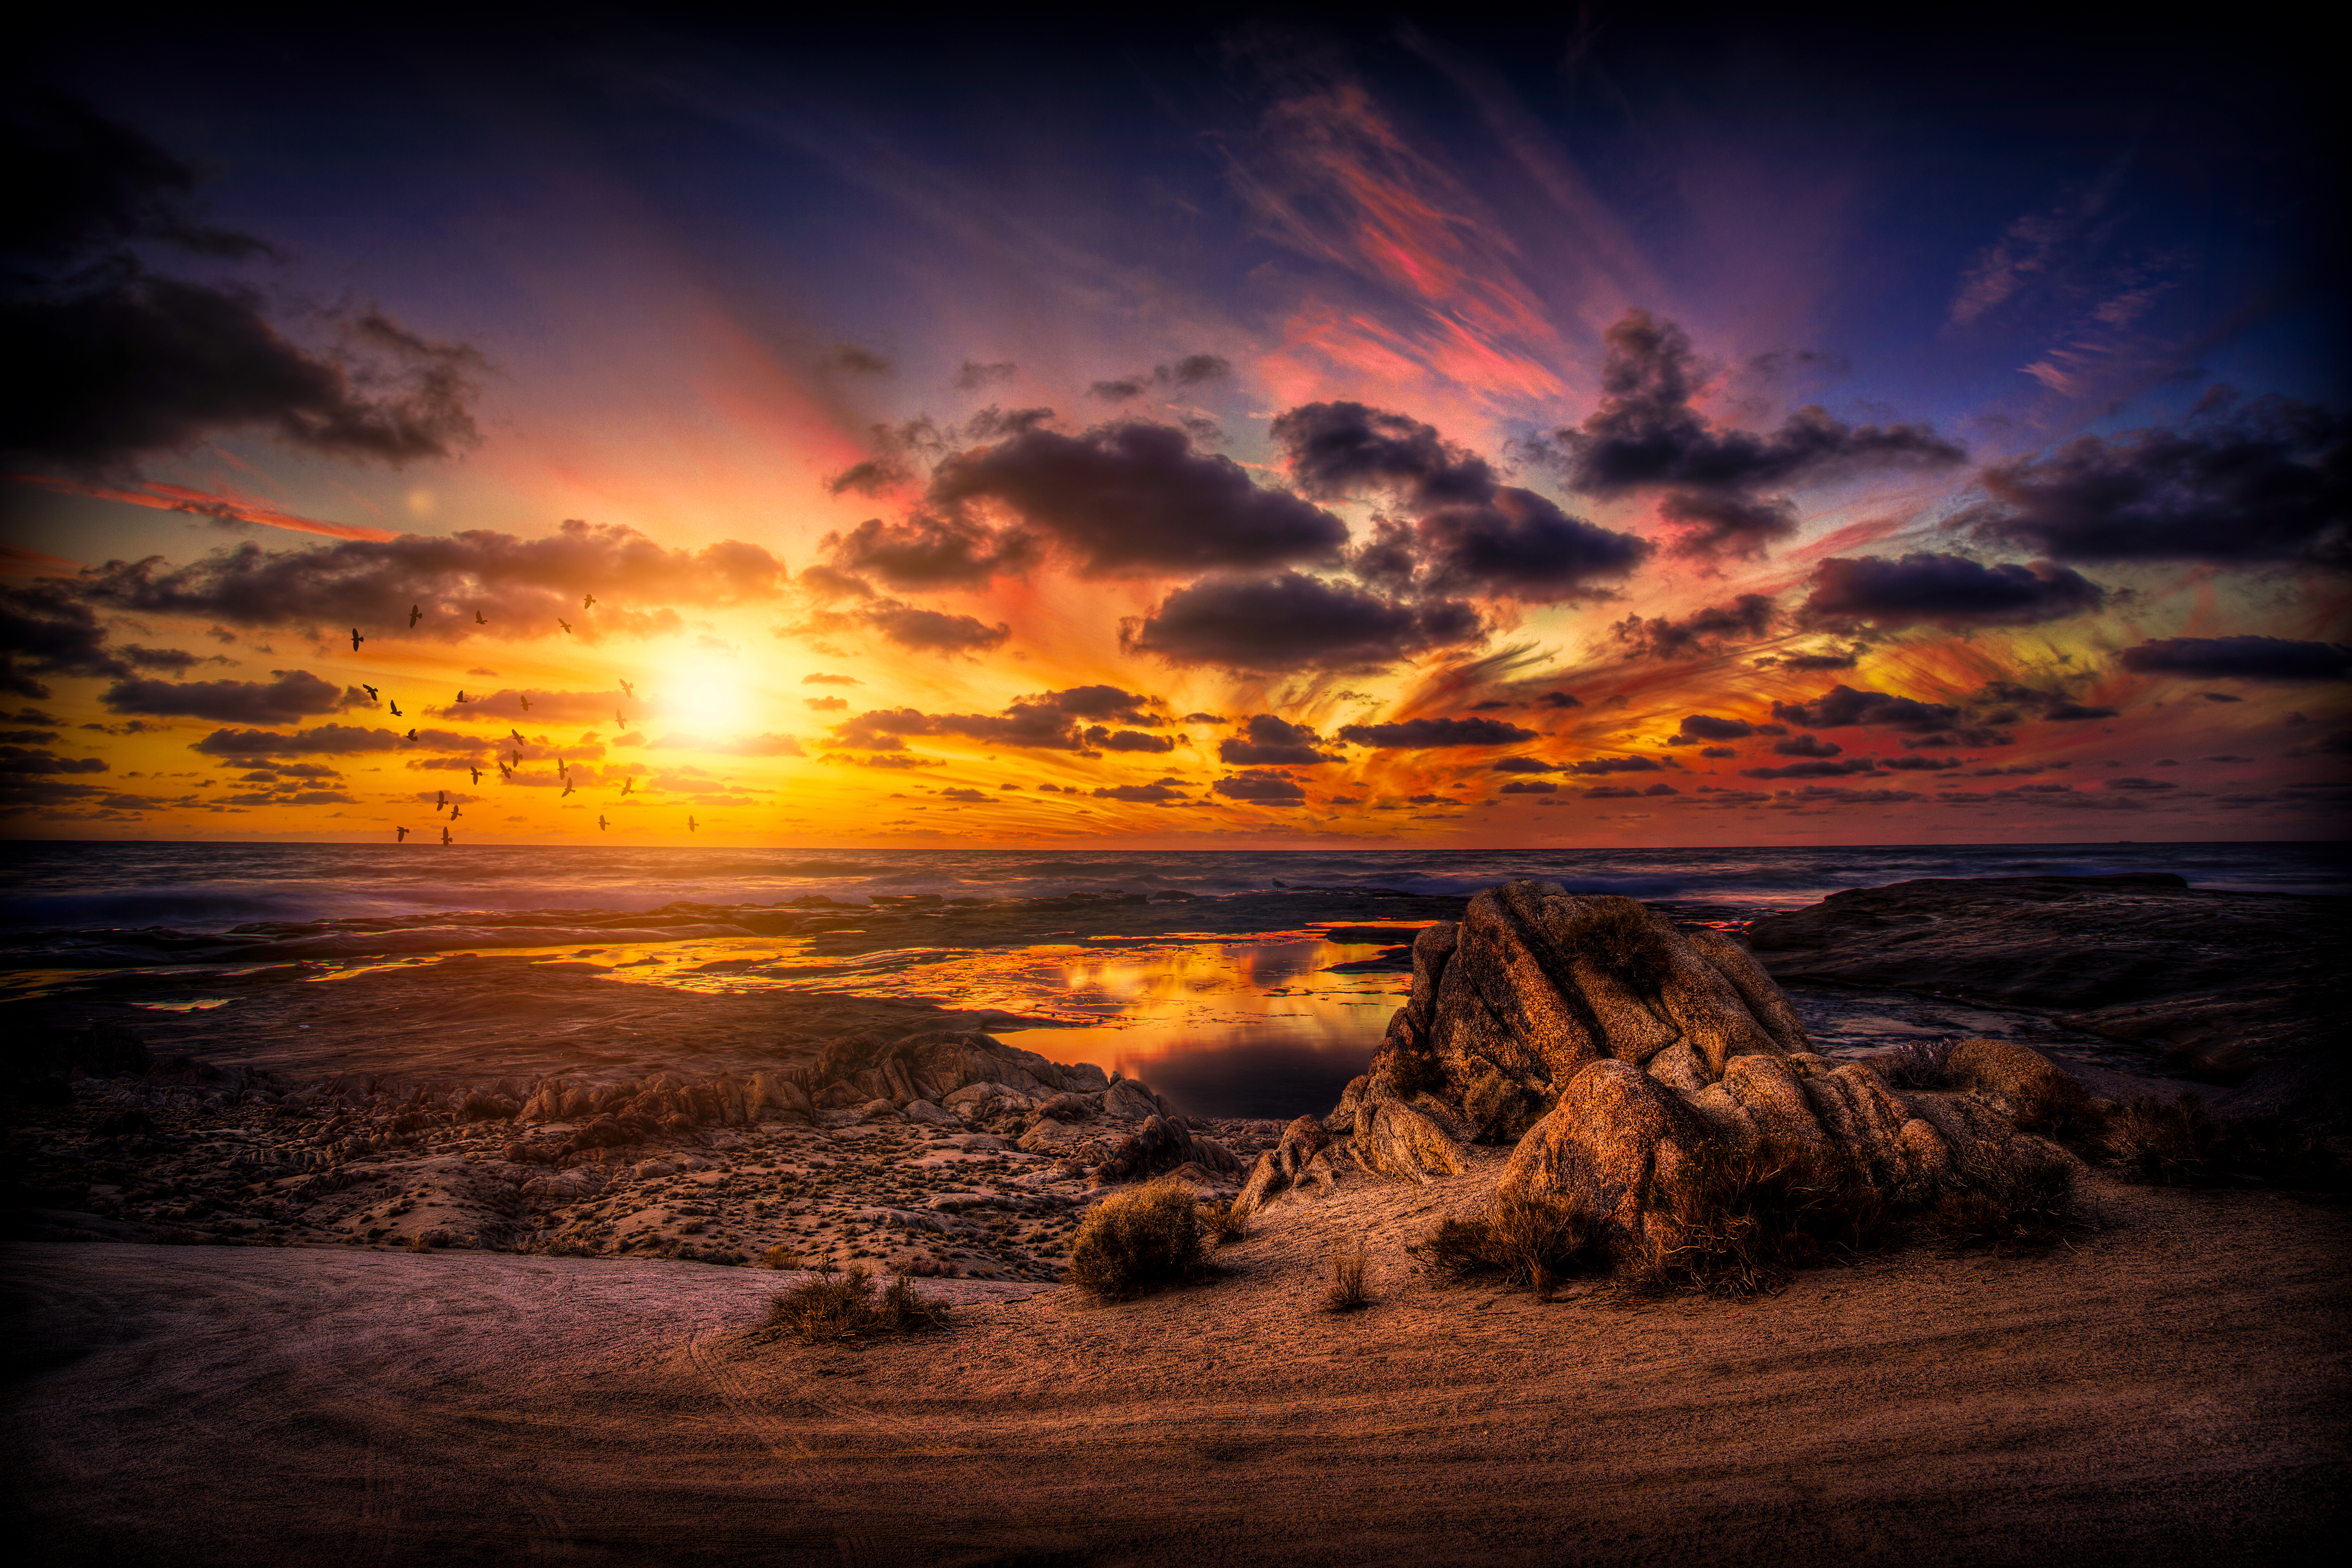 壁紙 4500x3000 風景写真 朝焼けと日没 空 湖 雲 自然 ダウンロード 写真